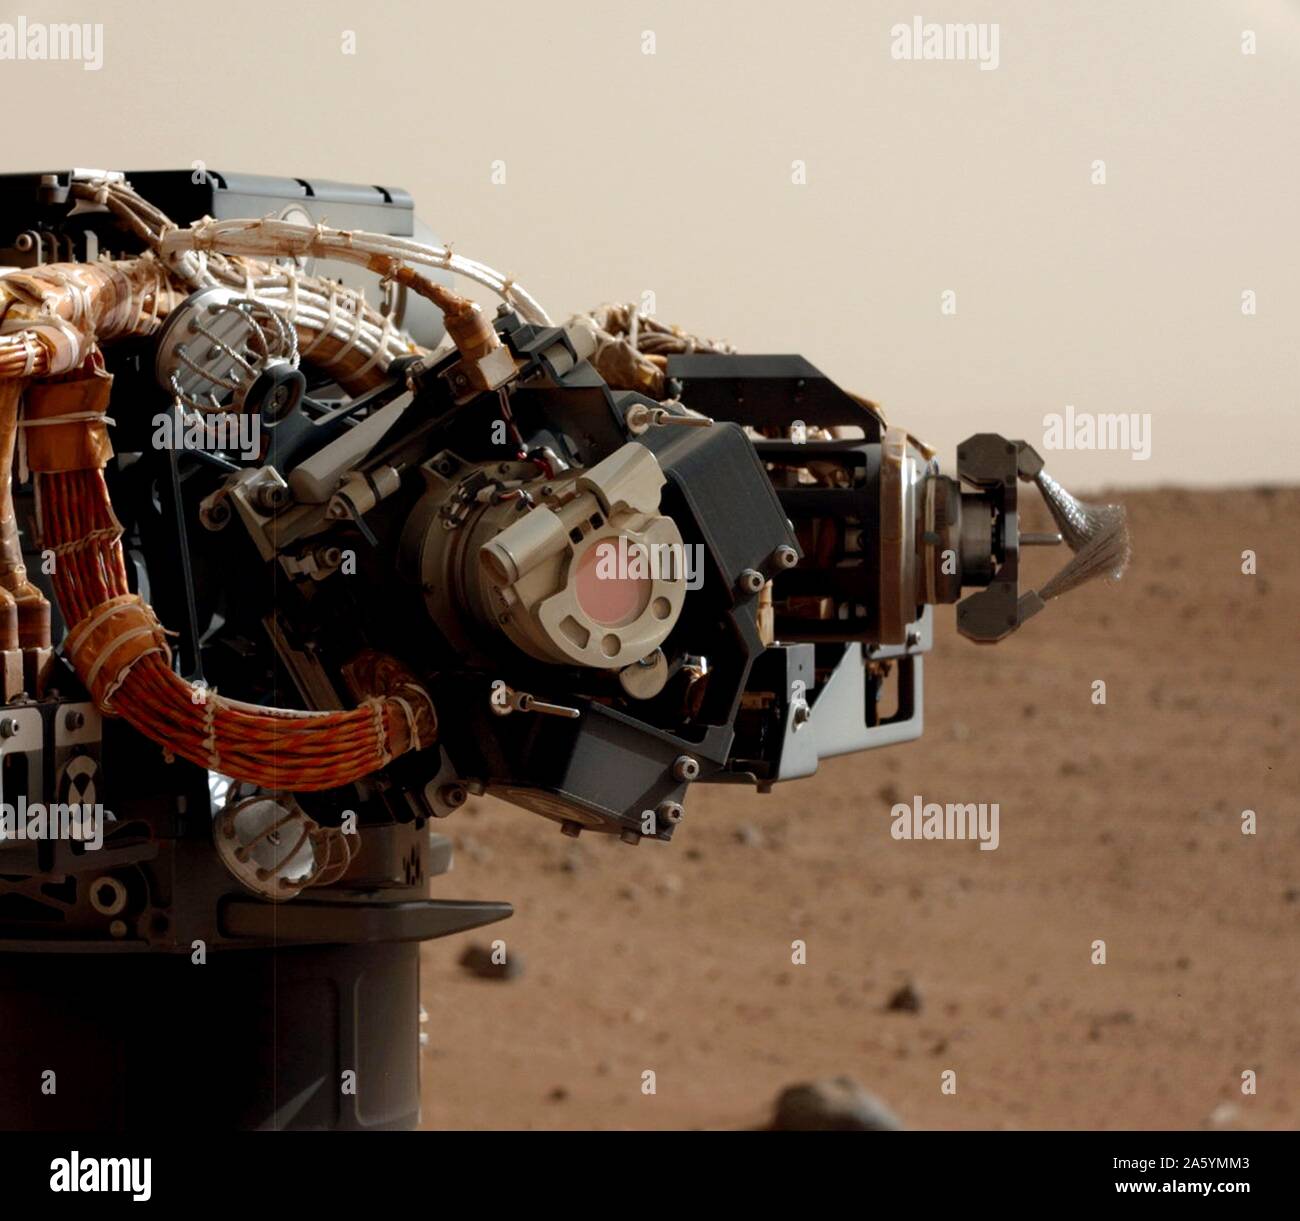 L'œil gauche de l'appareil photo du mât (Mastcam) de la NASA sur Mars Rover  Curiosity a pris cette image de la caméra sur le bras du rover Photo Stock  - Alamy